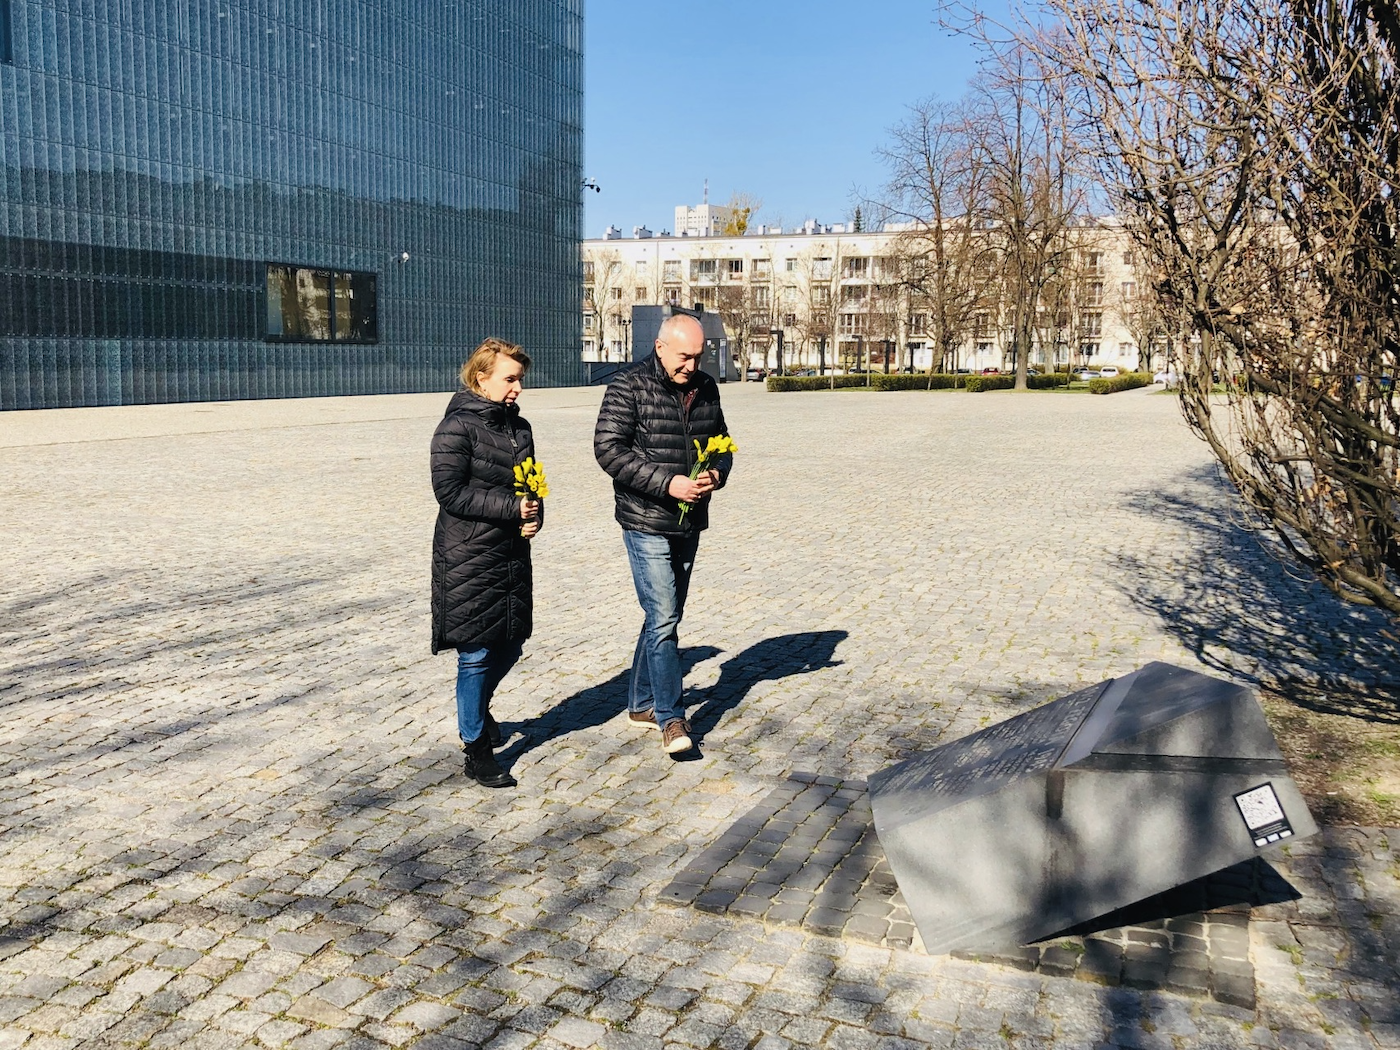 Dyrektor Muzeum POLIN - Zygmunt Stępiński - oraz Zastępczyni Dyrektora ds. Programowych - Jolanta Gumula - składają kwiaty na płycie upamiętniającej powstanie Rady Pomocy Żydom "Żegota"